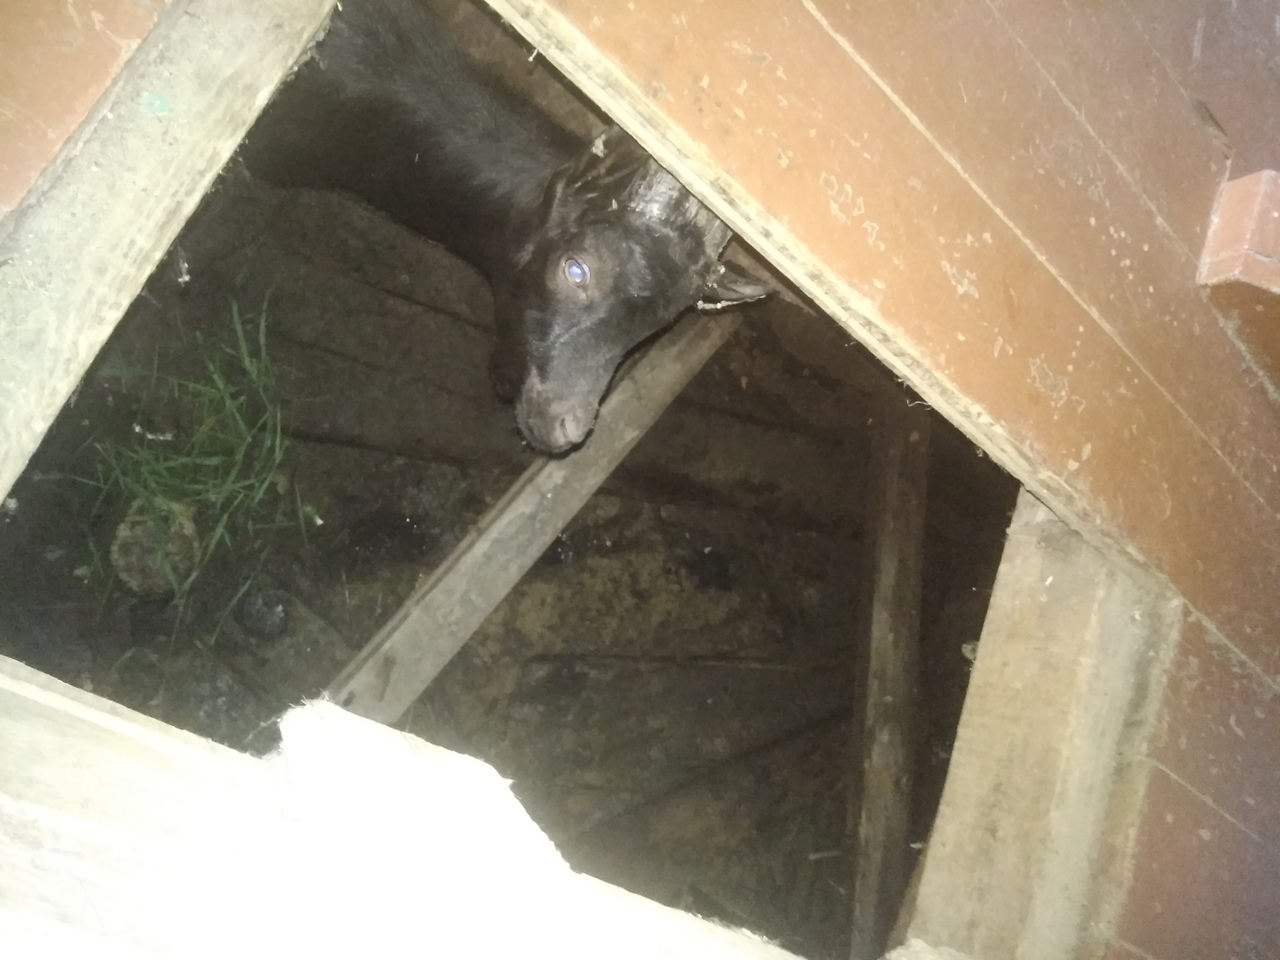 В Коми спасли козу провалившуюся в подполье